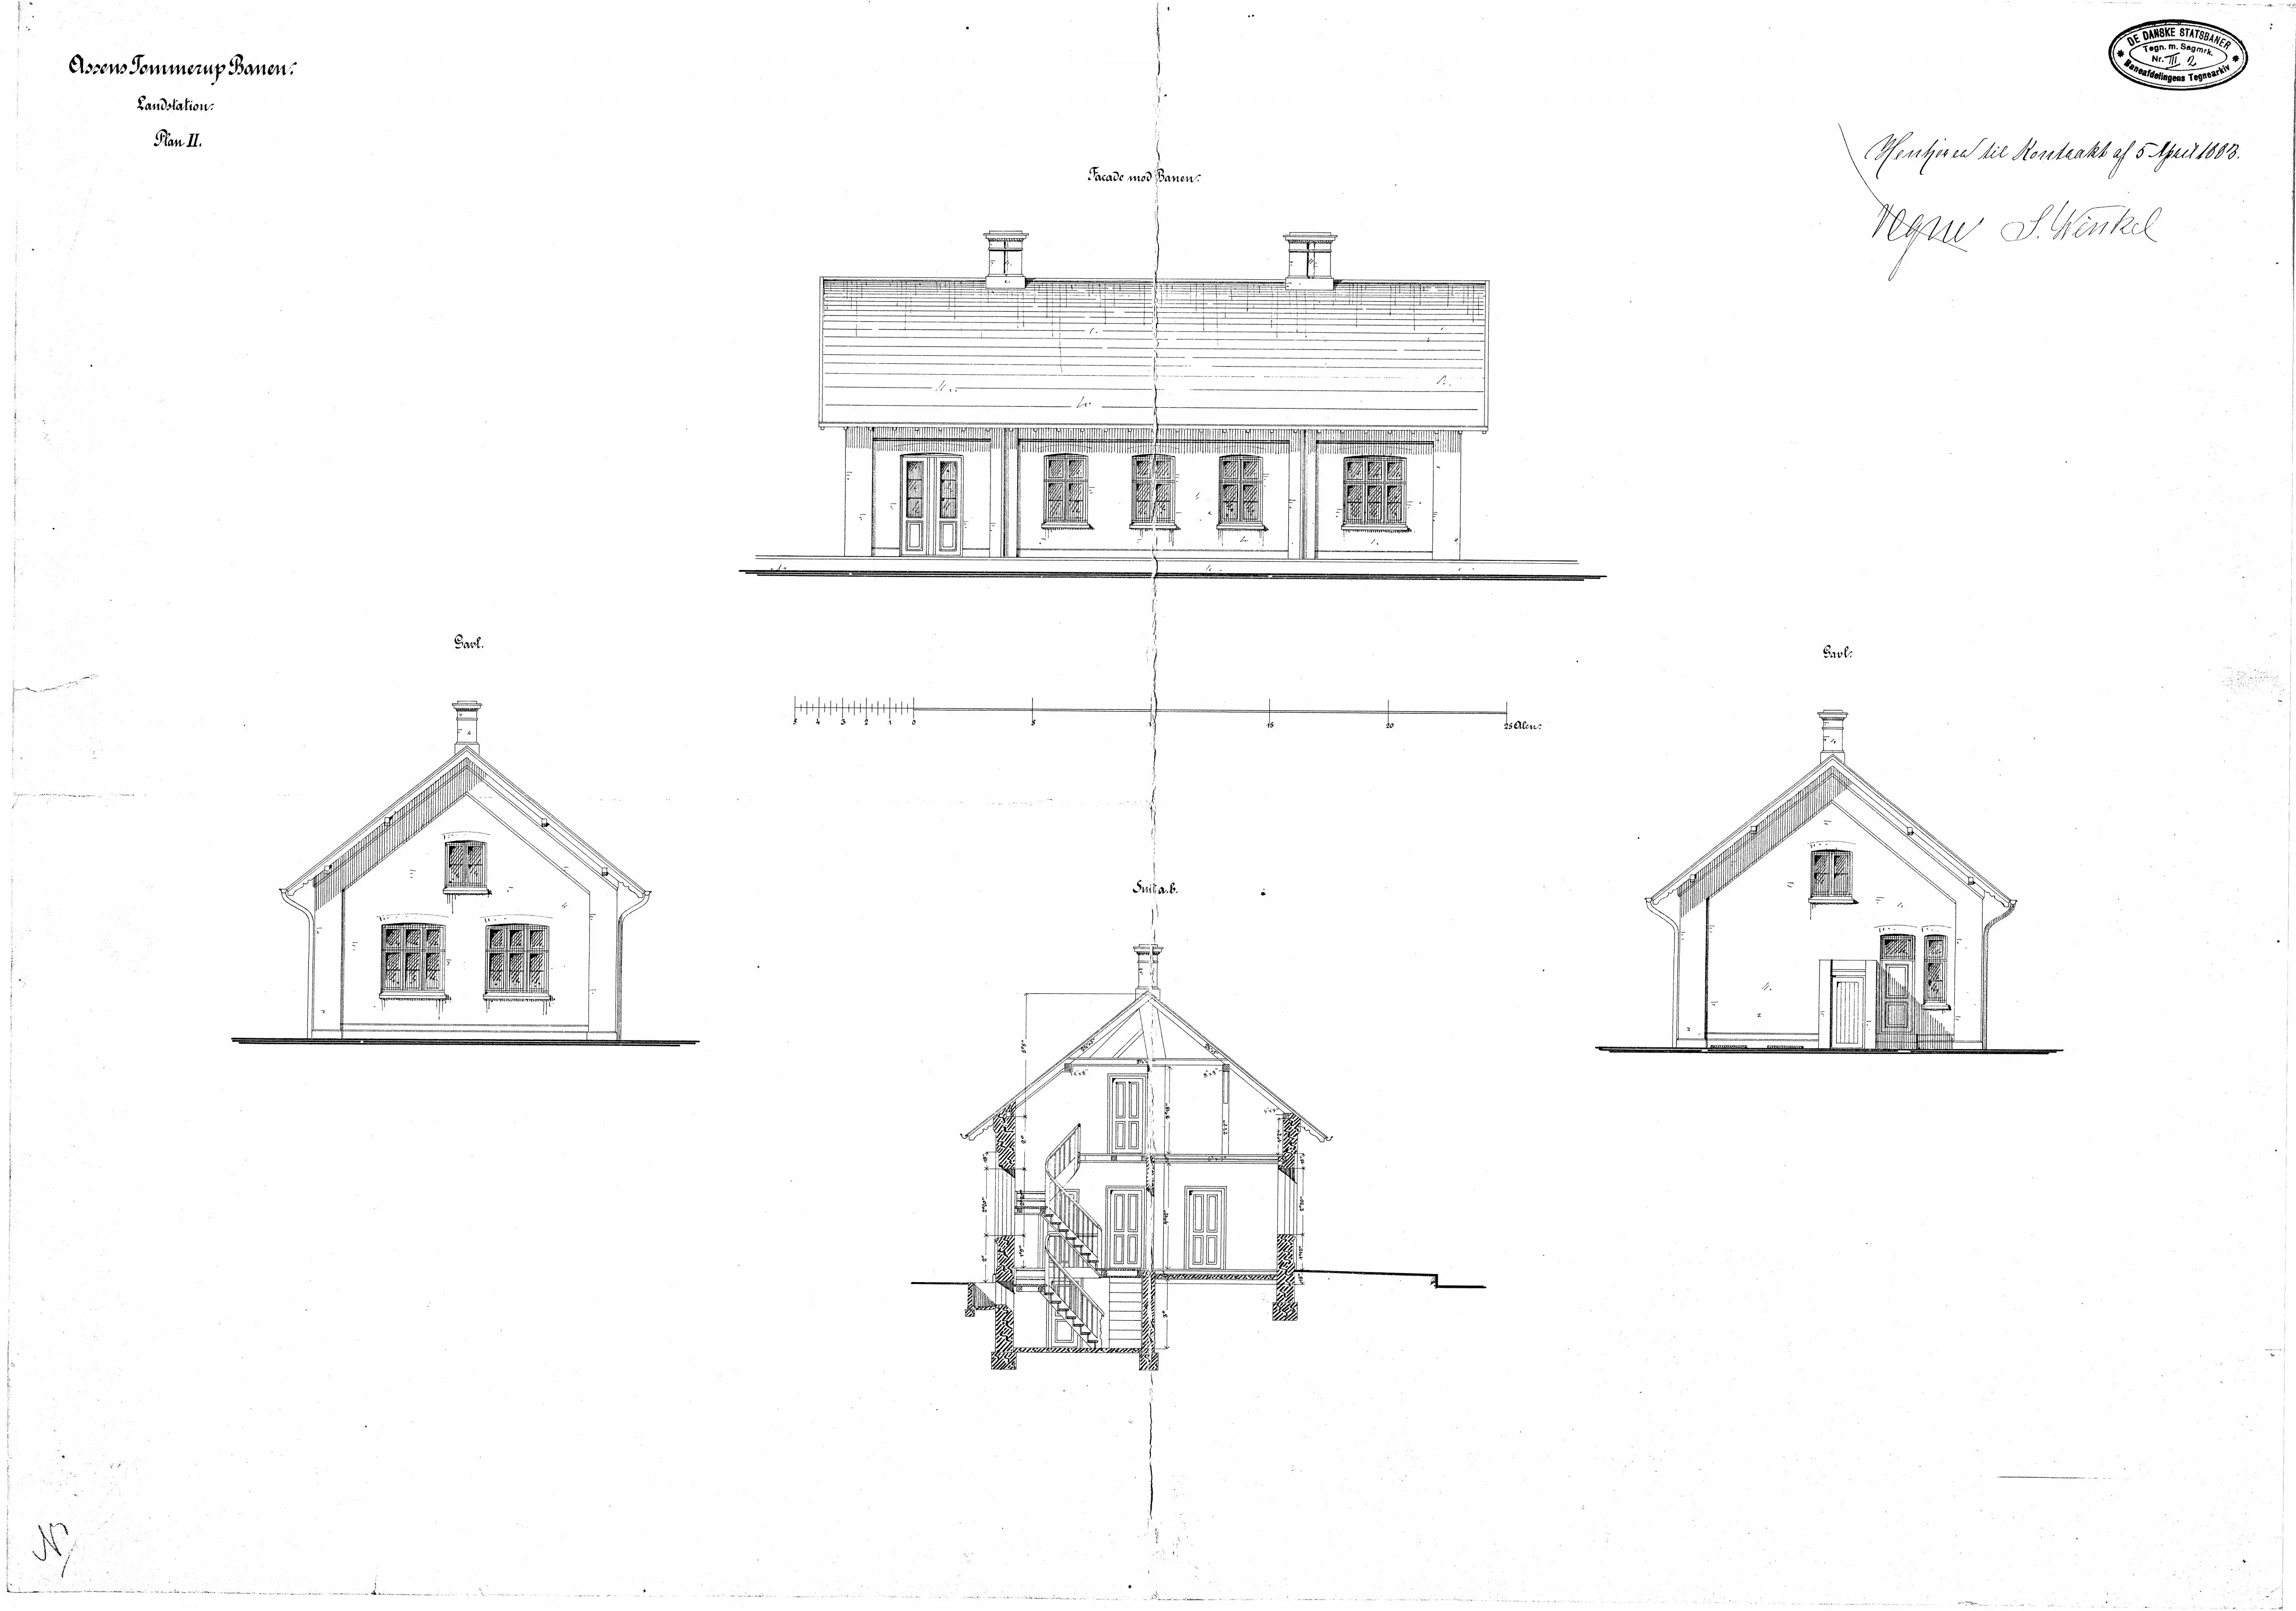 Tegning af Nårup Station.